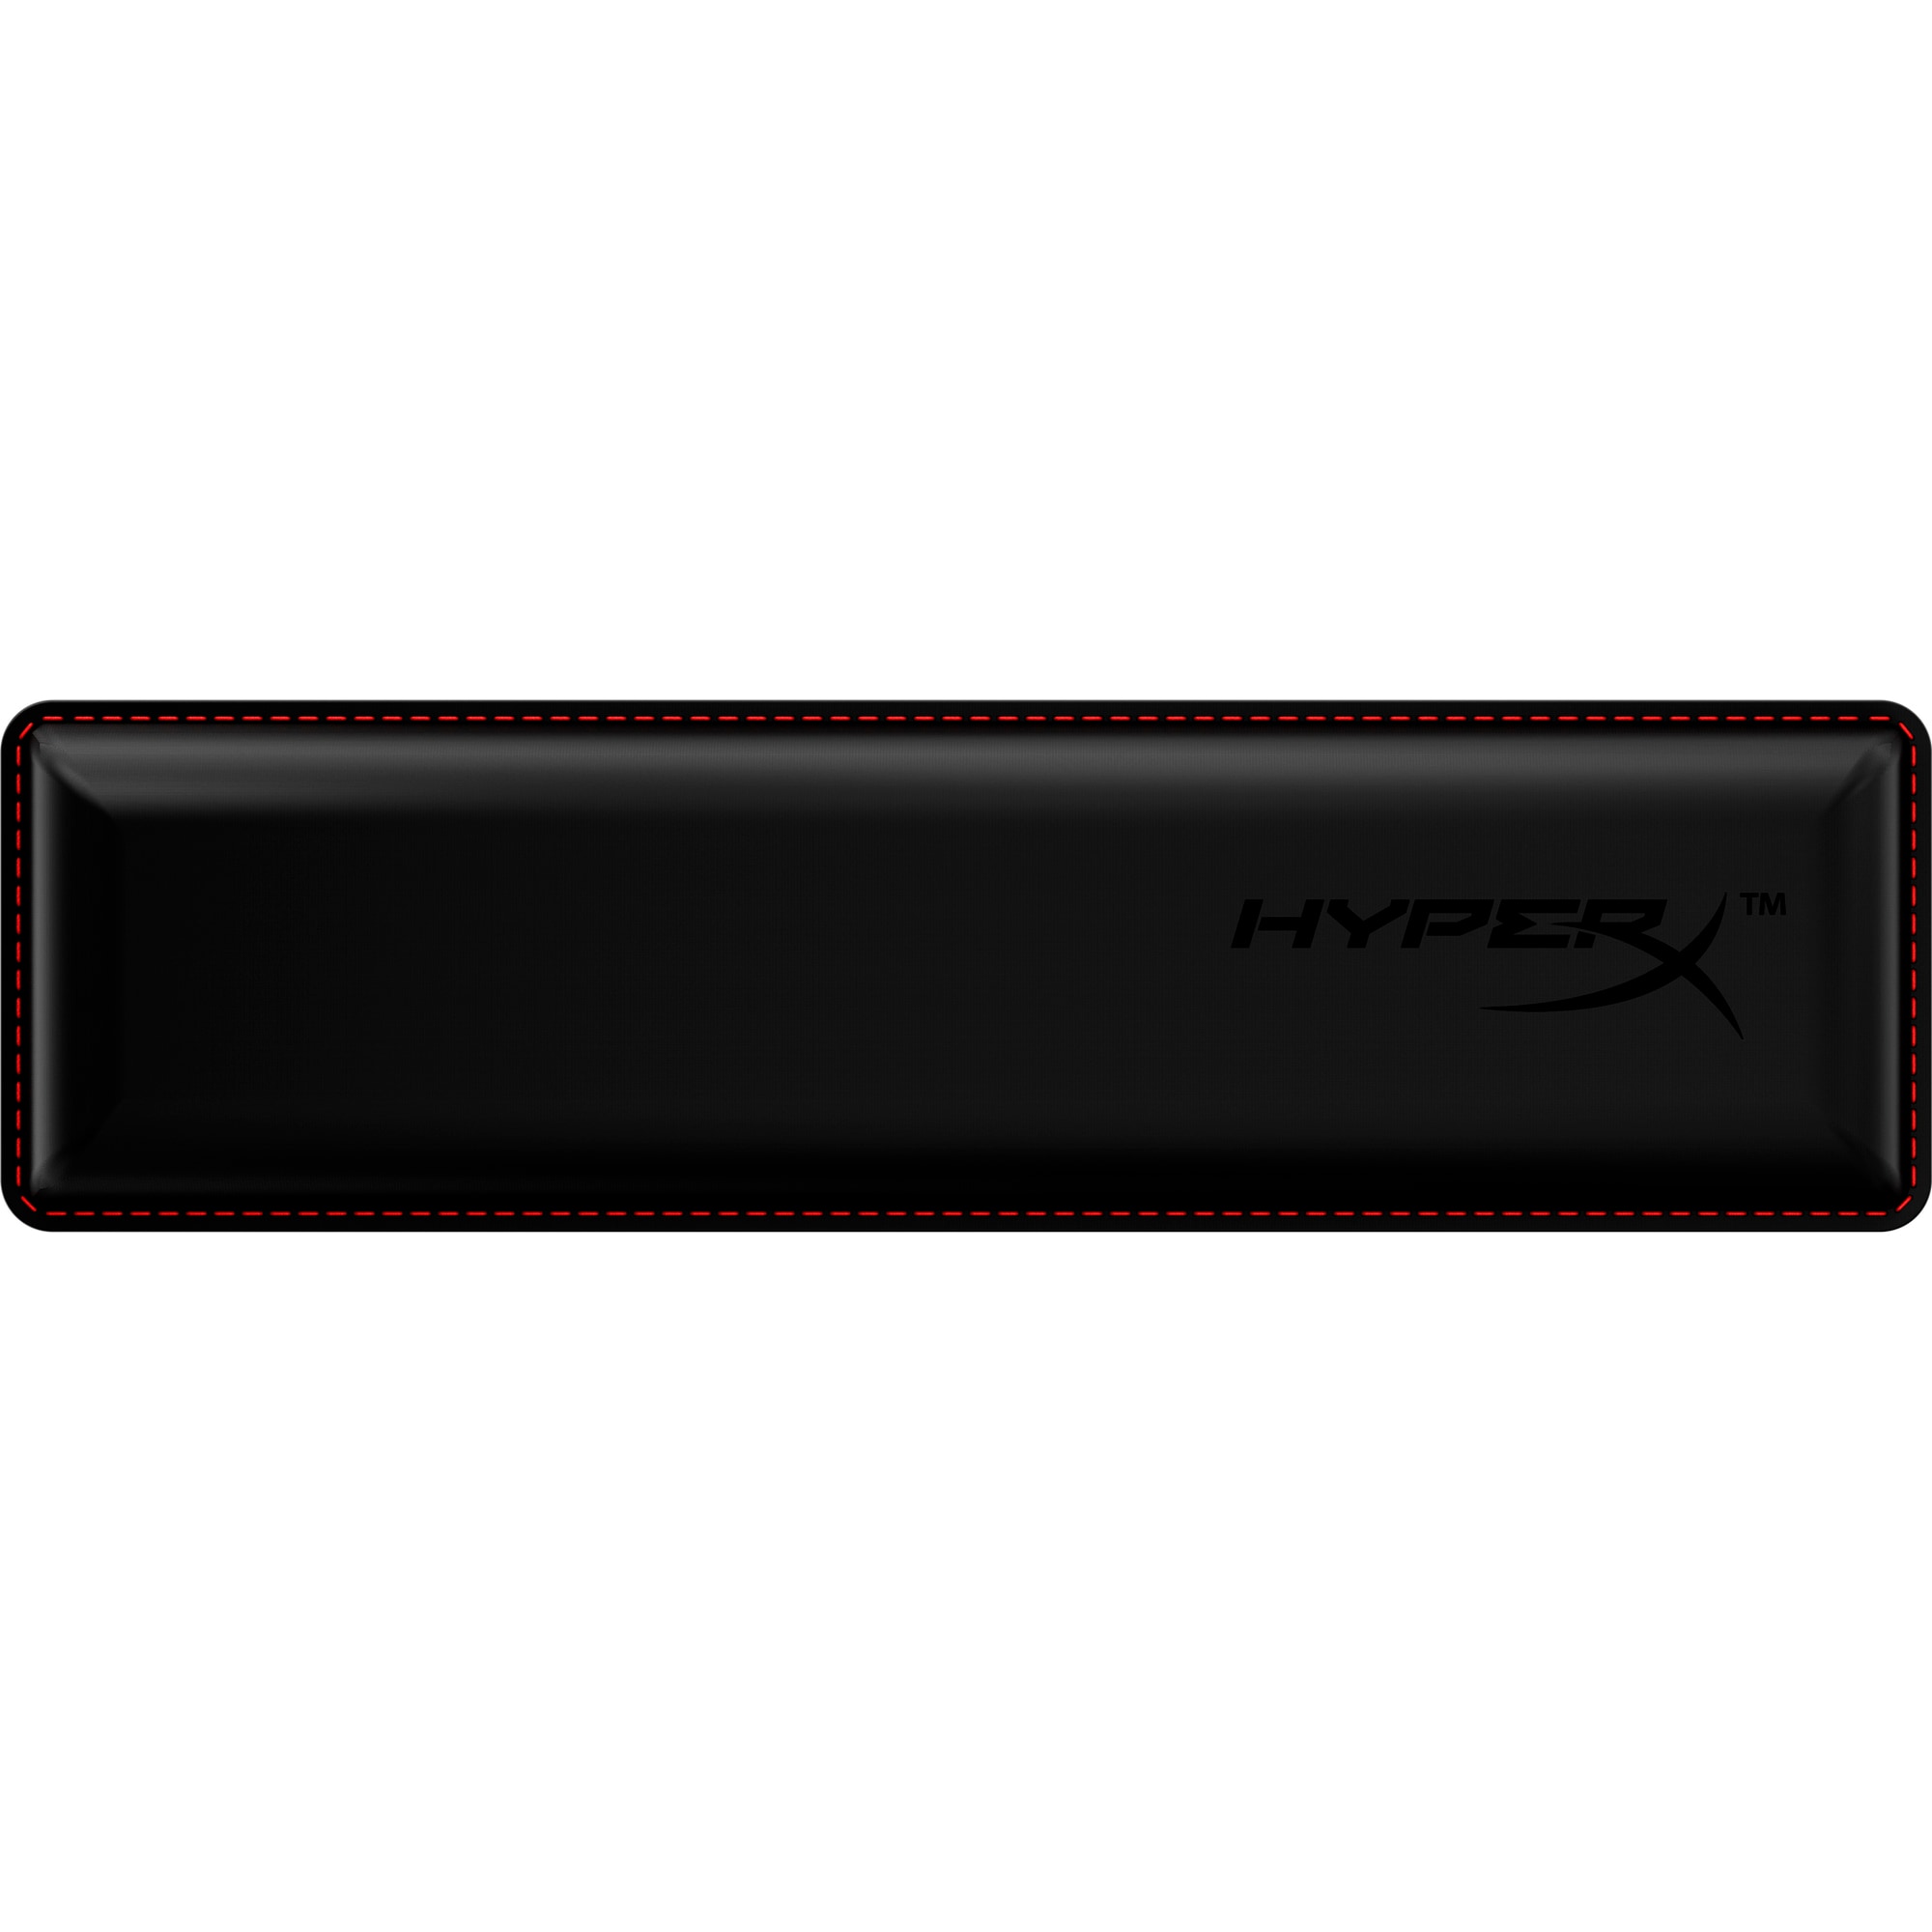 HyperX Wrist Rest - Keyboard - Compact 60%, 65% - Příslušenství ke klávesnici0 